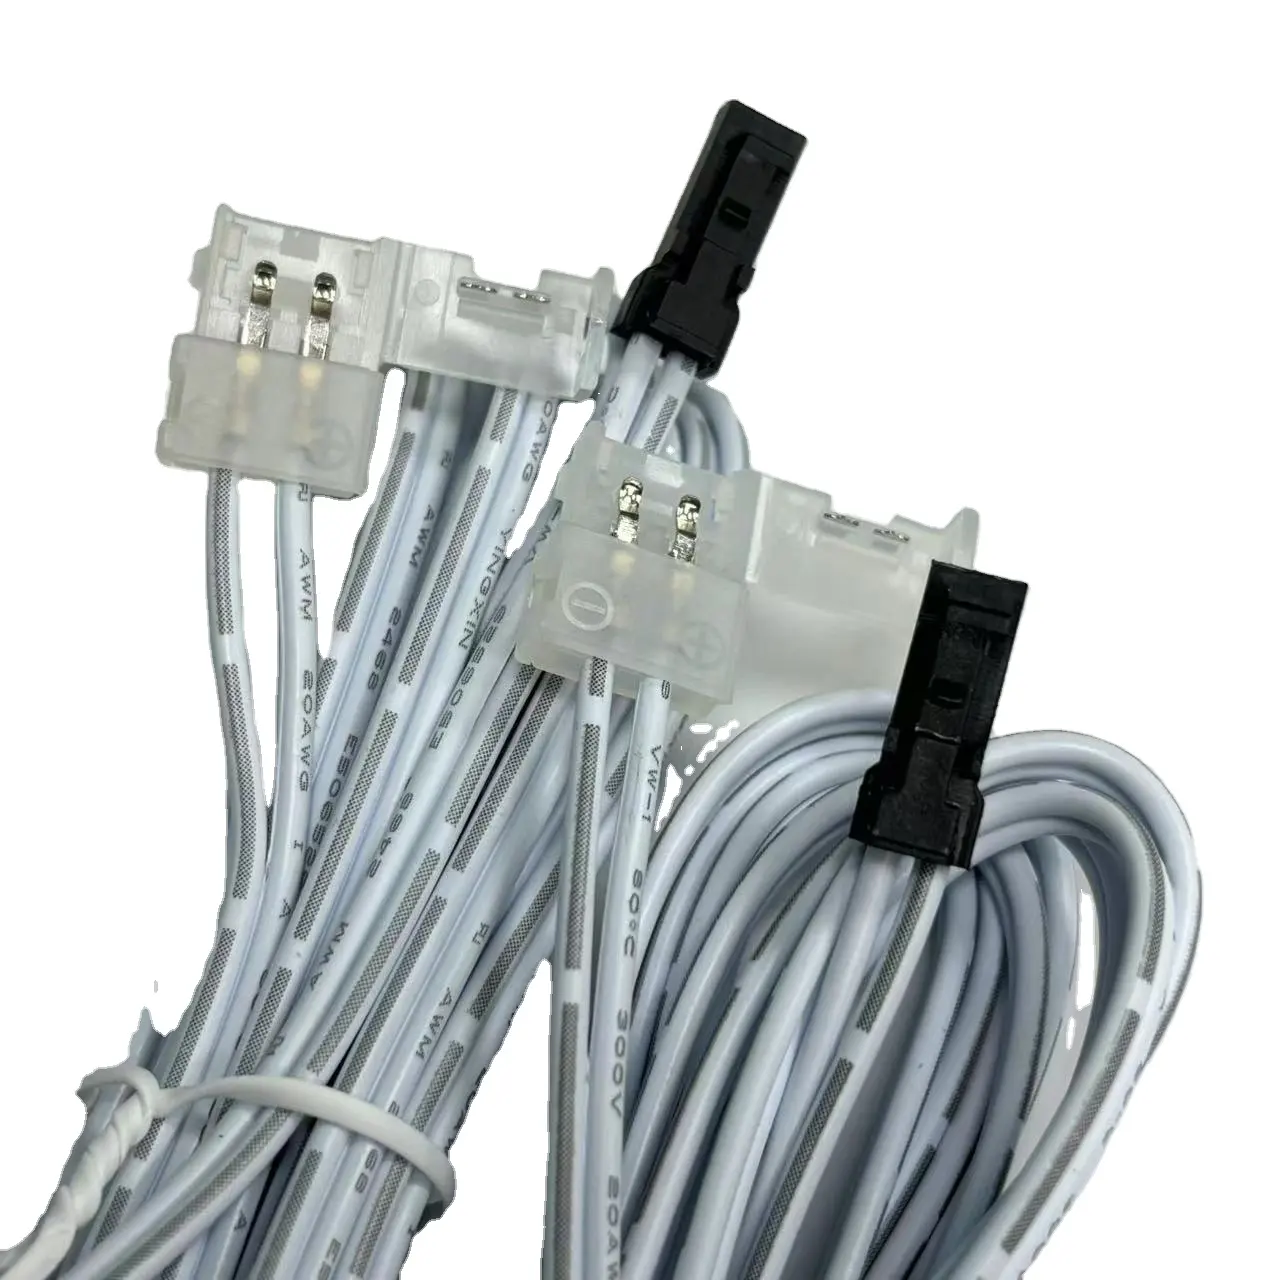 Connecteur de LED mâle-femelle Dupont personnalisé à 2 broches pour bandes lumineuses à LED de couleur unique